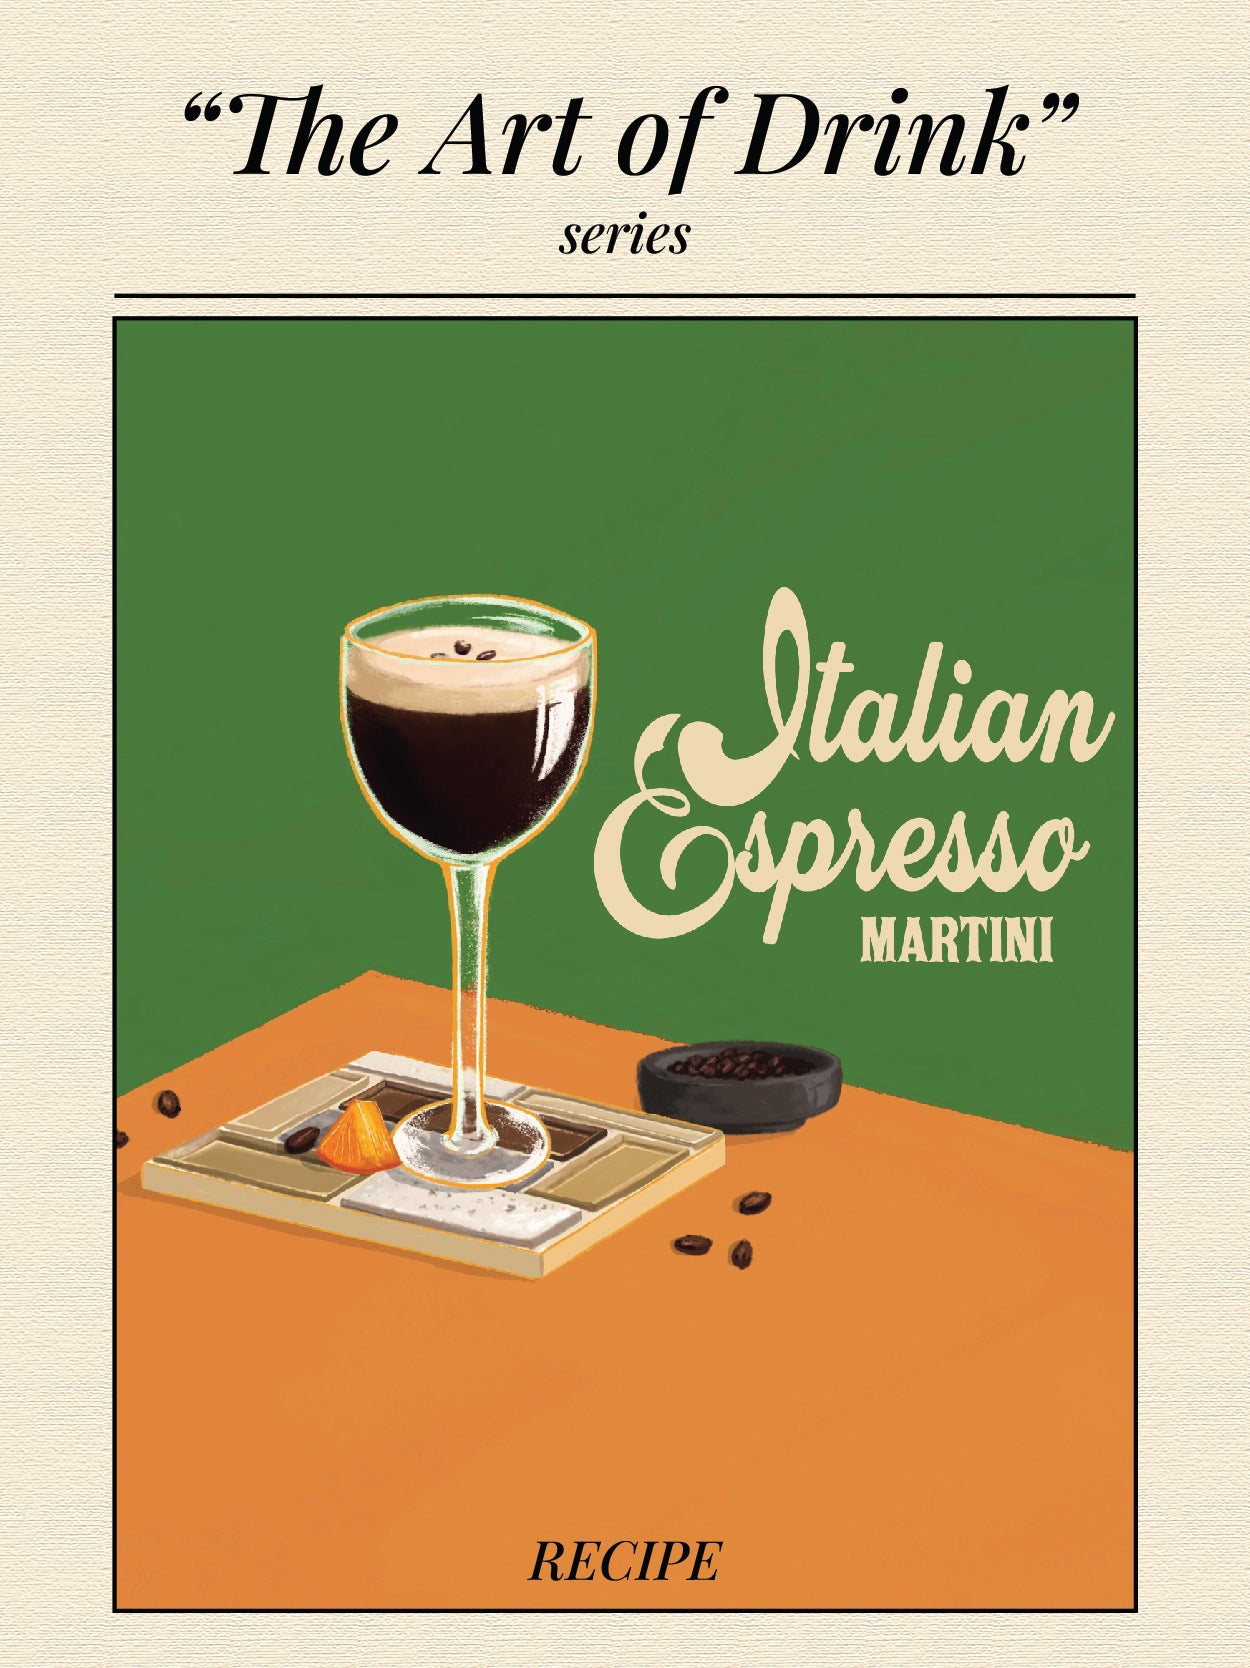 ITALIAN ESPRESSO MARTINI - "The Art of Drink" series